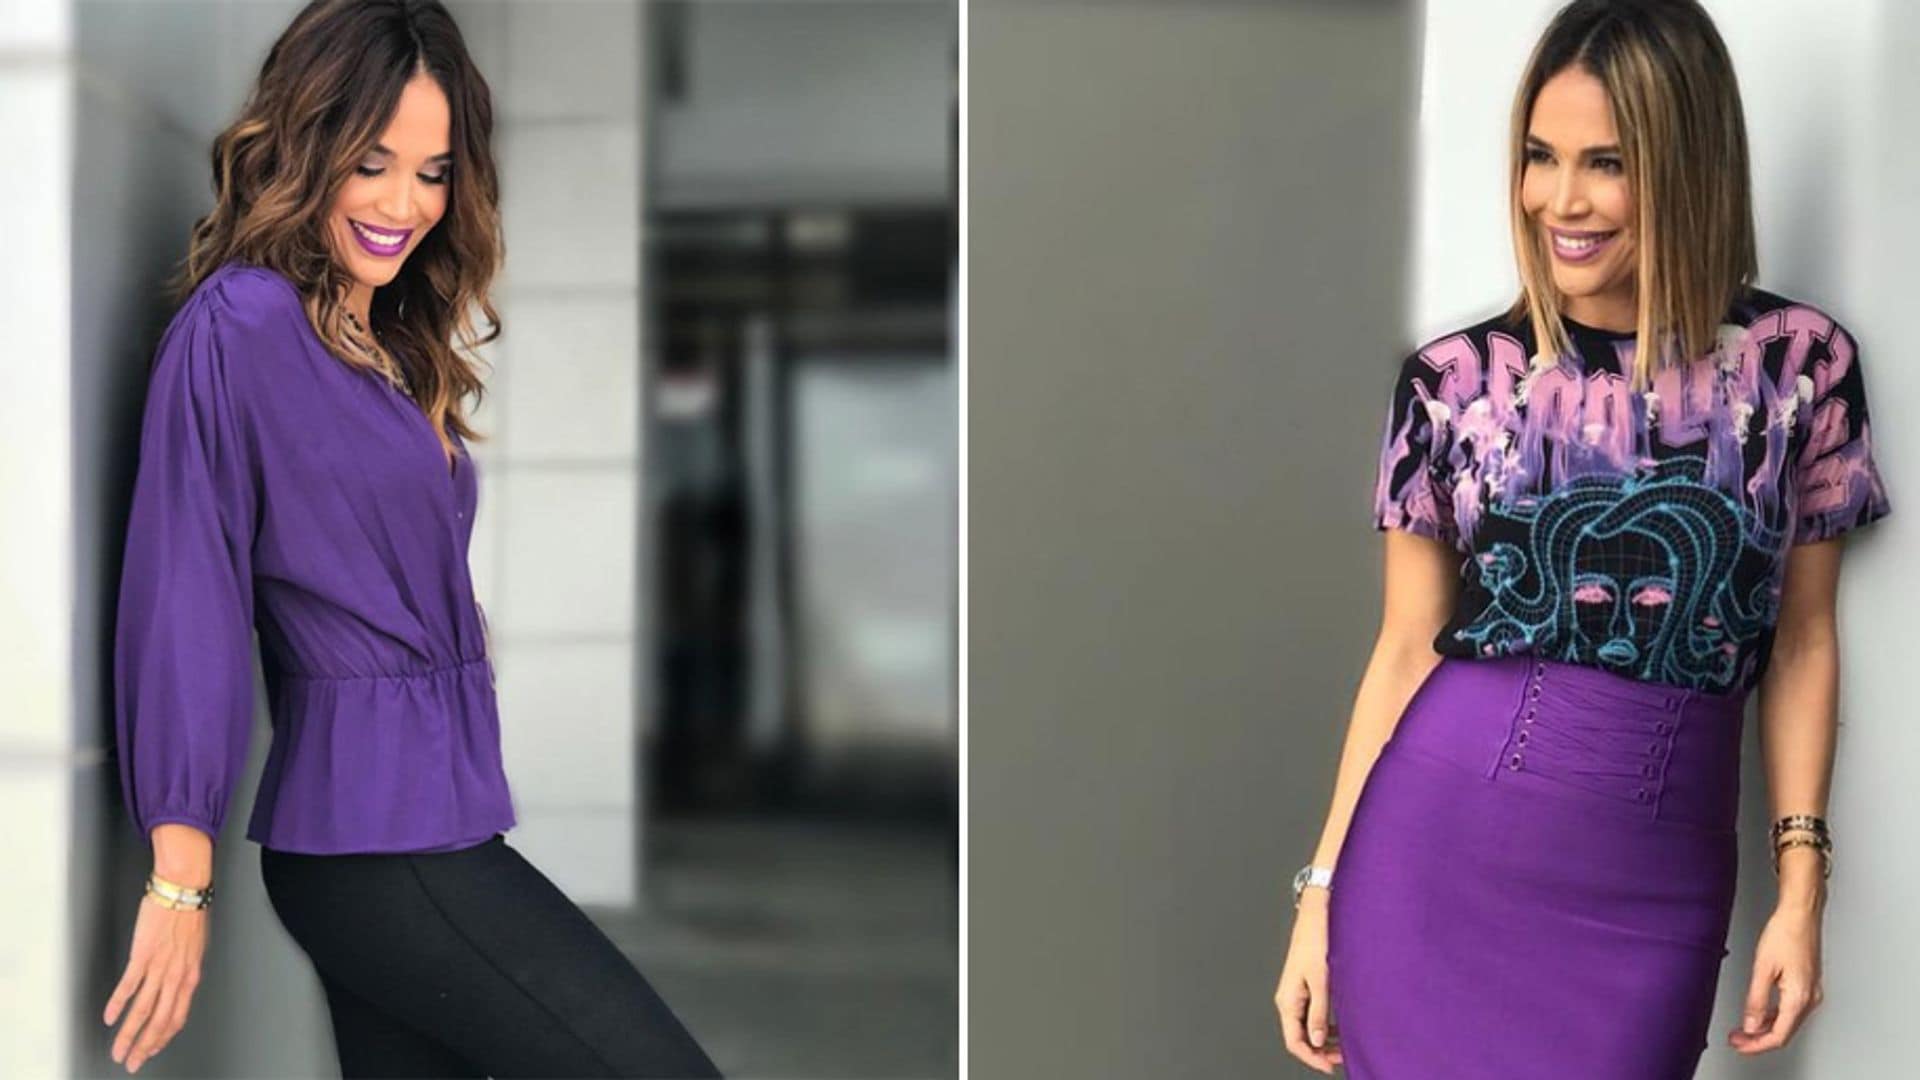 Karla Martinez acertó: ¡el violeta está de moda! mira cómo llevarlo